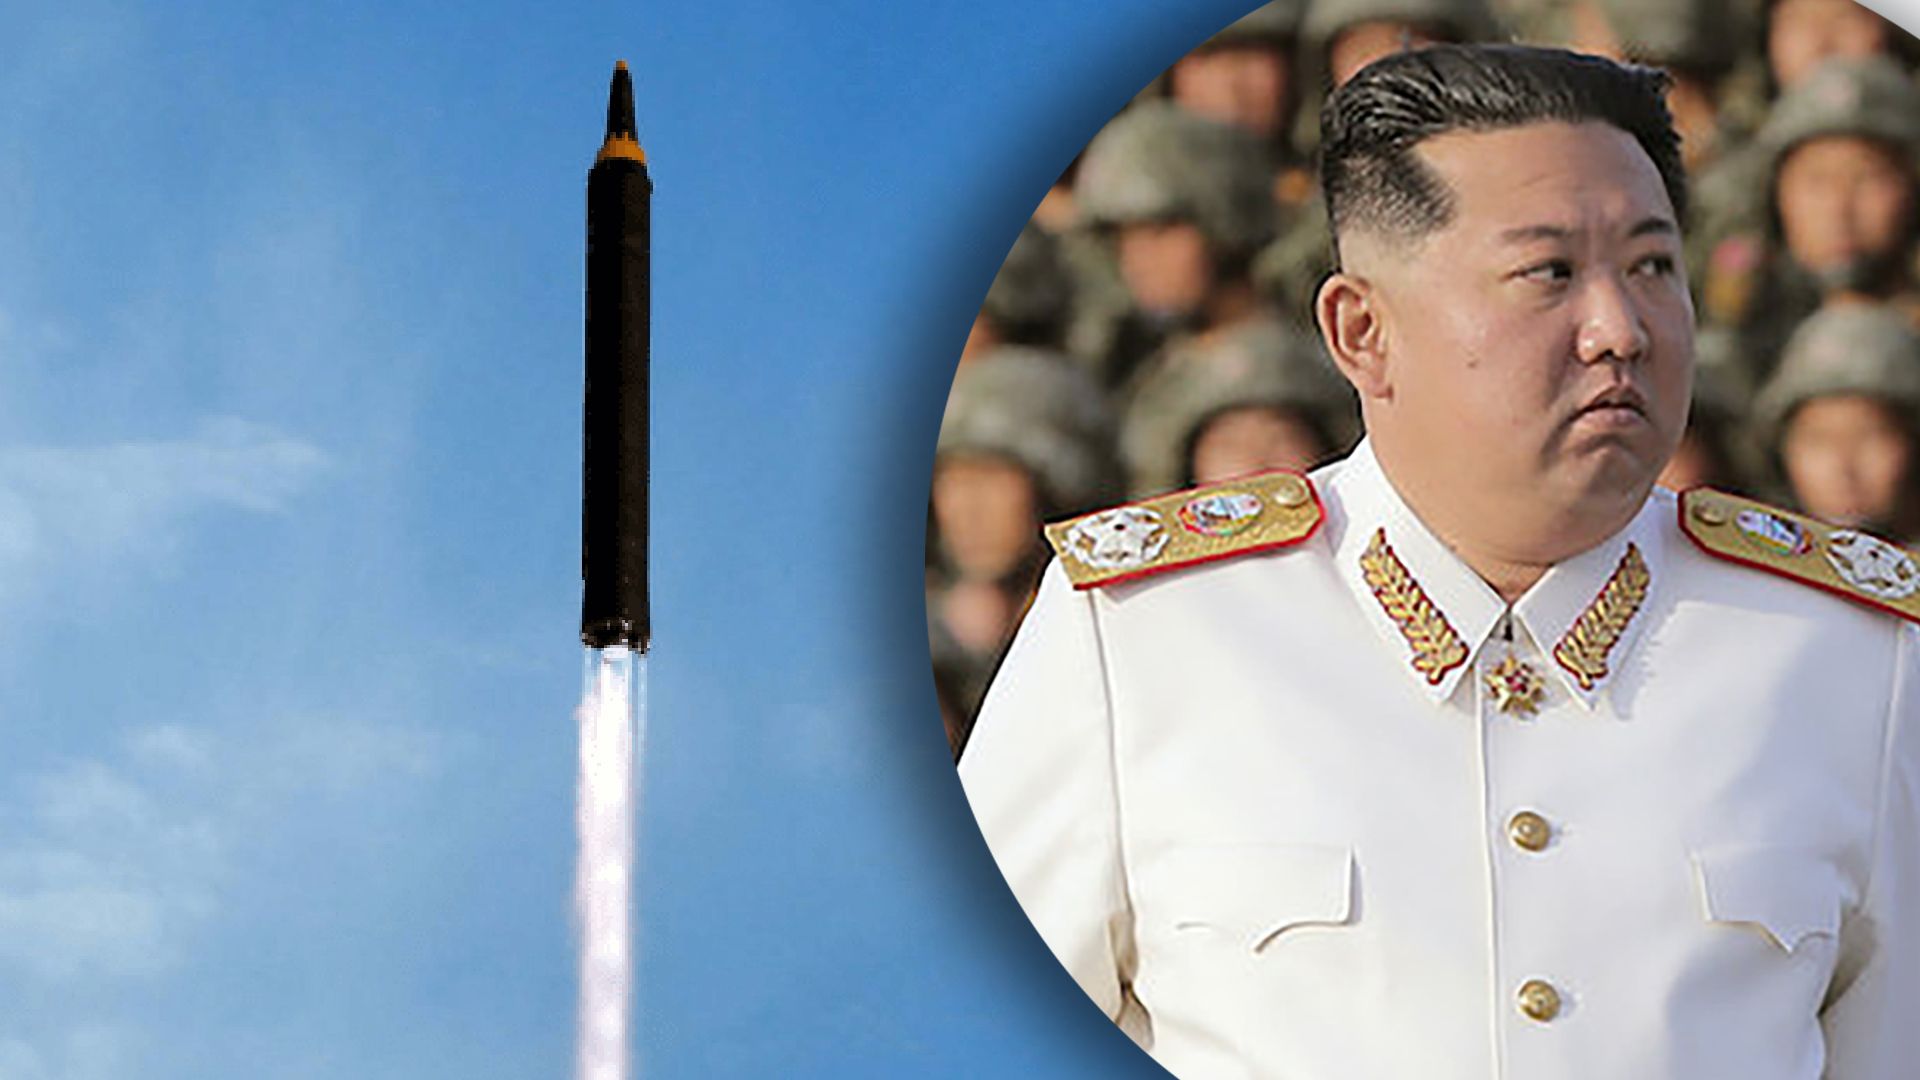 КНДР запустила баллистическую ракету 28 октября – что известно